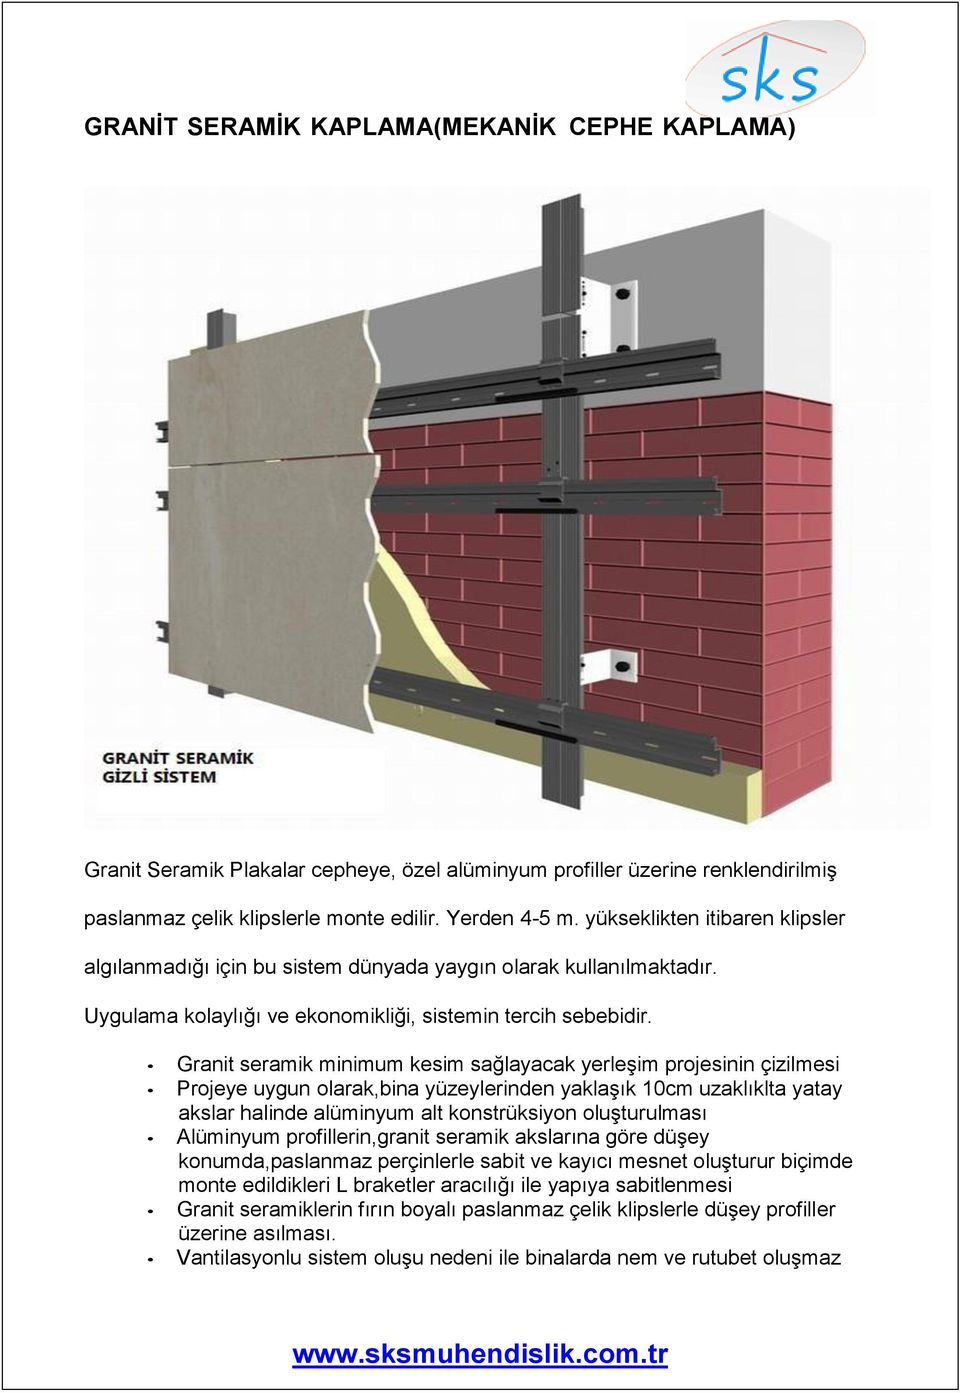 Granit seramik minimum kesim sağlayacak yerleşim projesinin çizilmesi Projeye uygun olarak,bina yüzeylerinden yaklaşık 10cm uzaklıklta yatay akslar halinde alüminyum alt konstrüksiyon oluşturulması